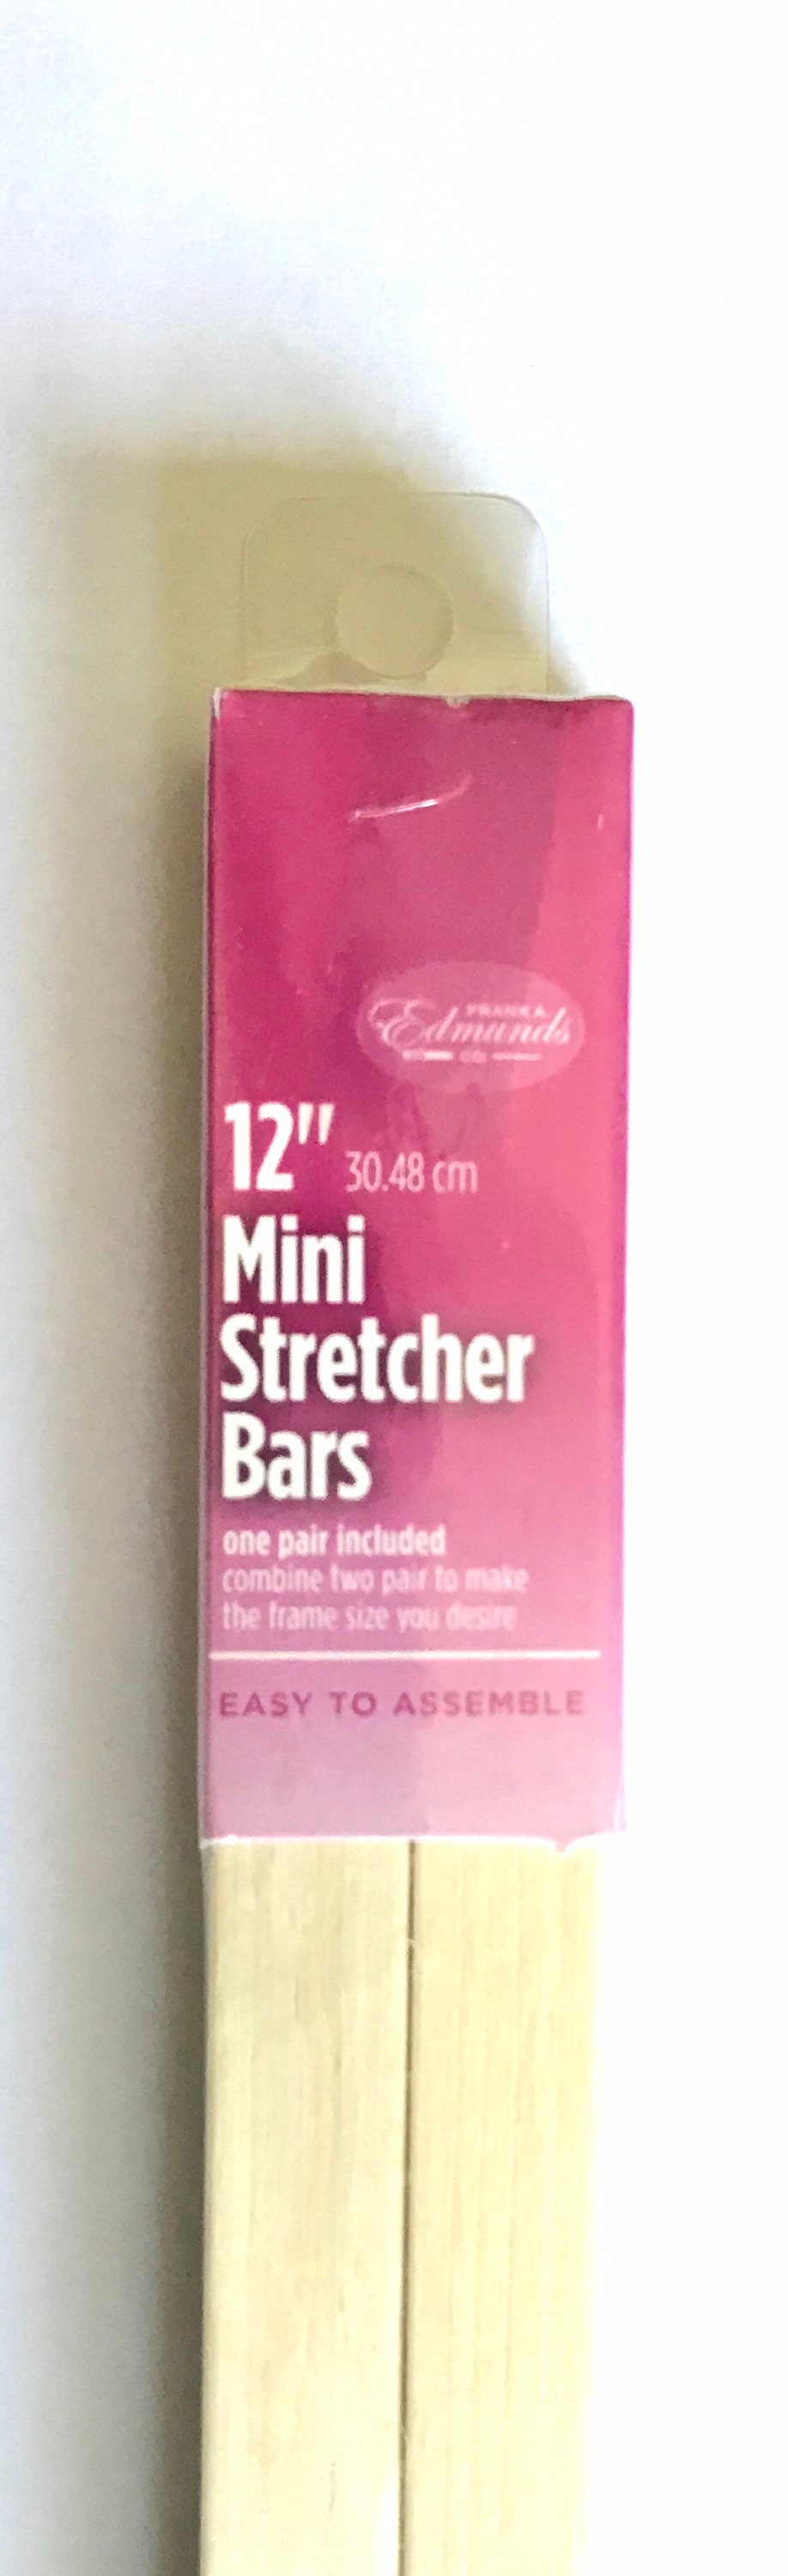 Needlepoint MINI Stretcher Bars 12 Inch Mini Stretcher Bars 